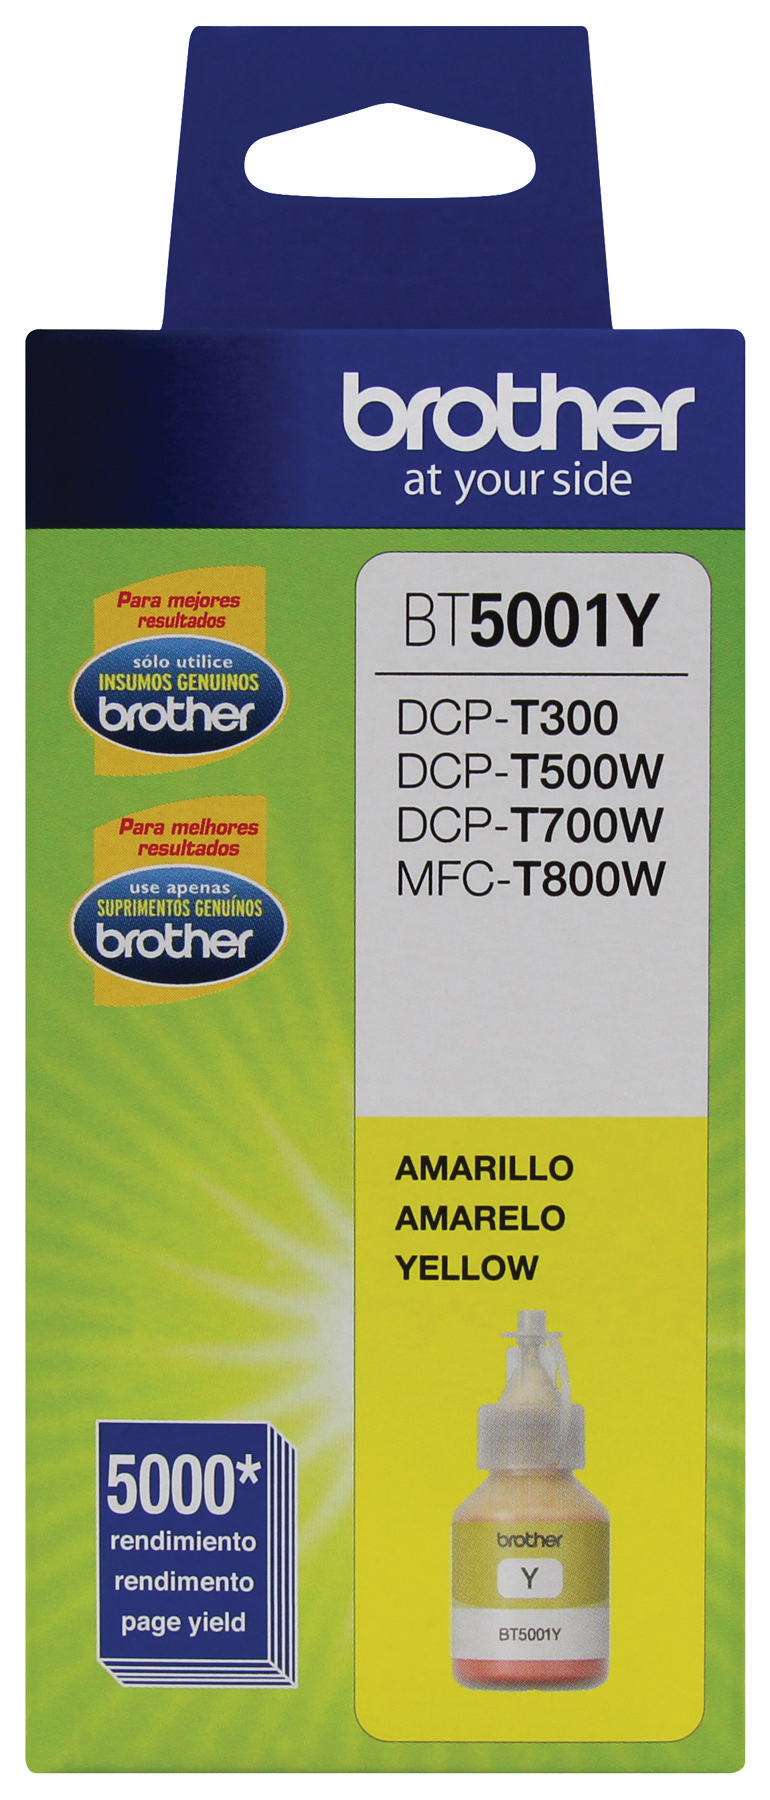 Botella de Tinta Brother BT5001Y - Amarillo